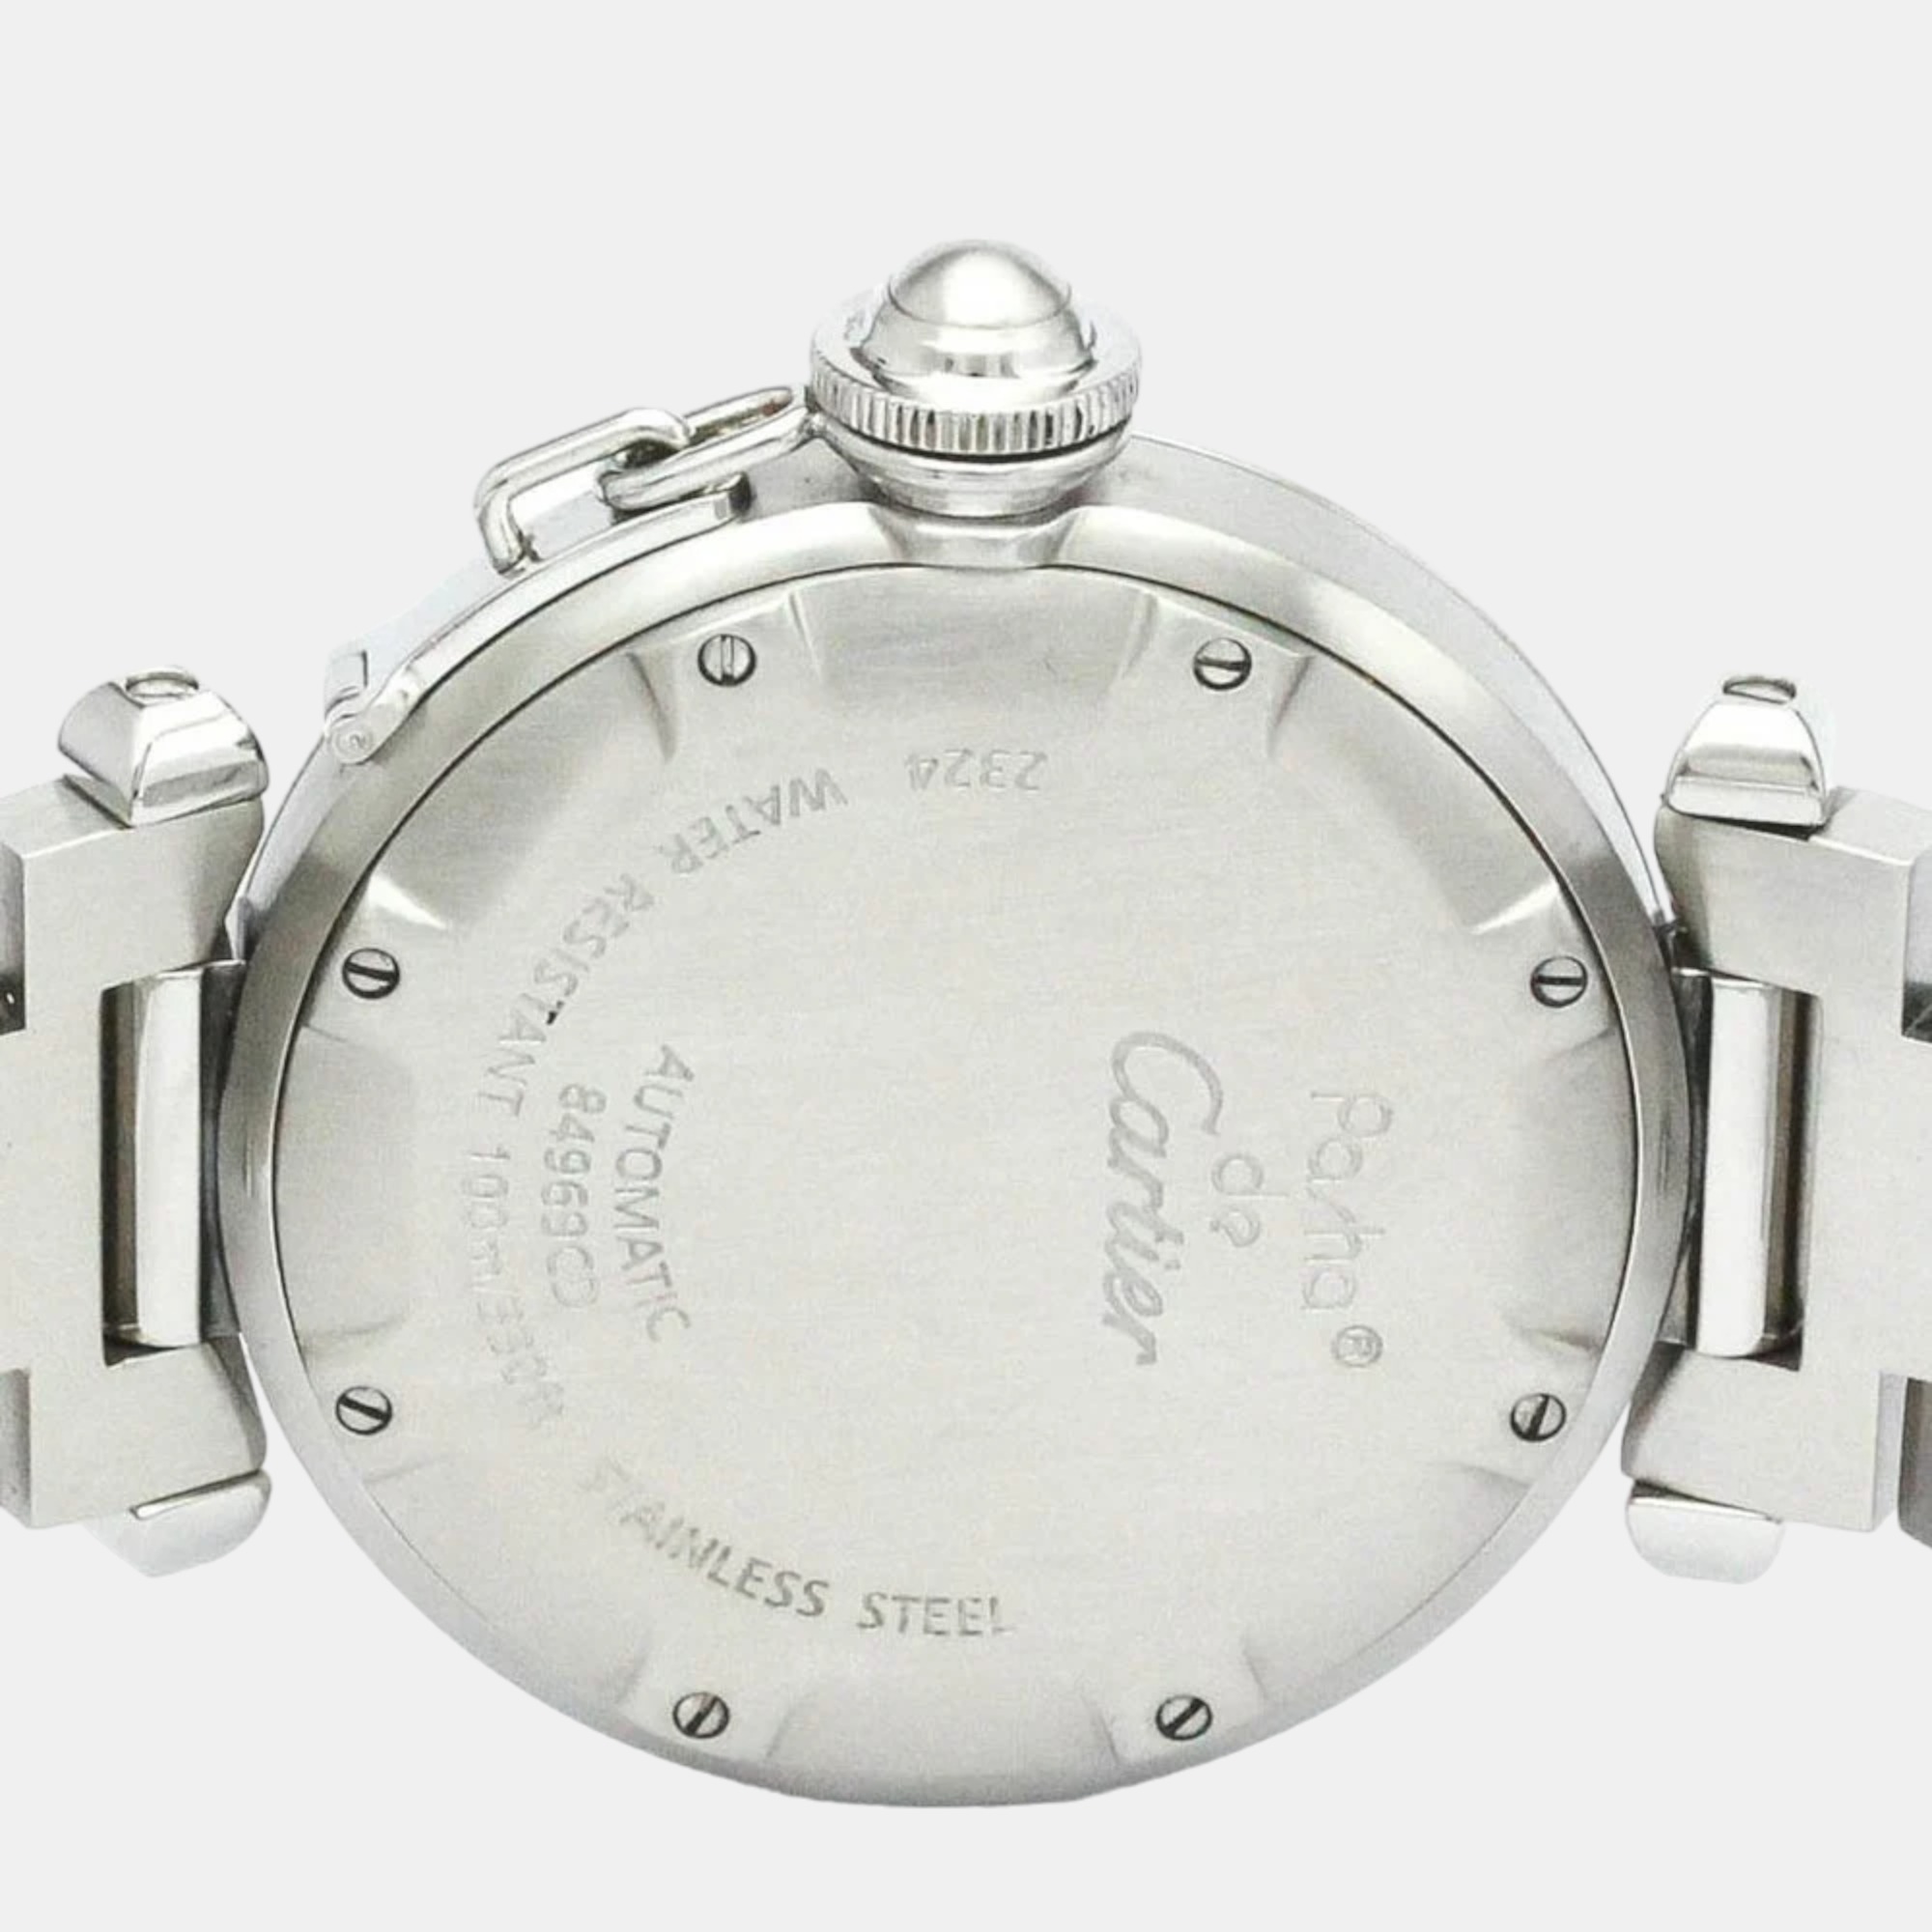 Cartier Black Stainless Steel Pasha C De Cartier W31043M7 Automatic Women's Wristwatch 35 Mm